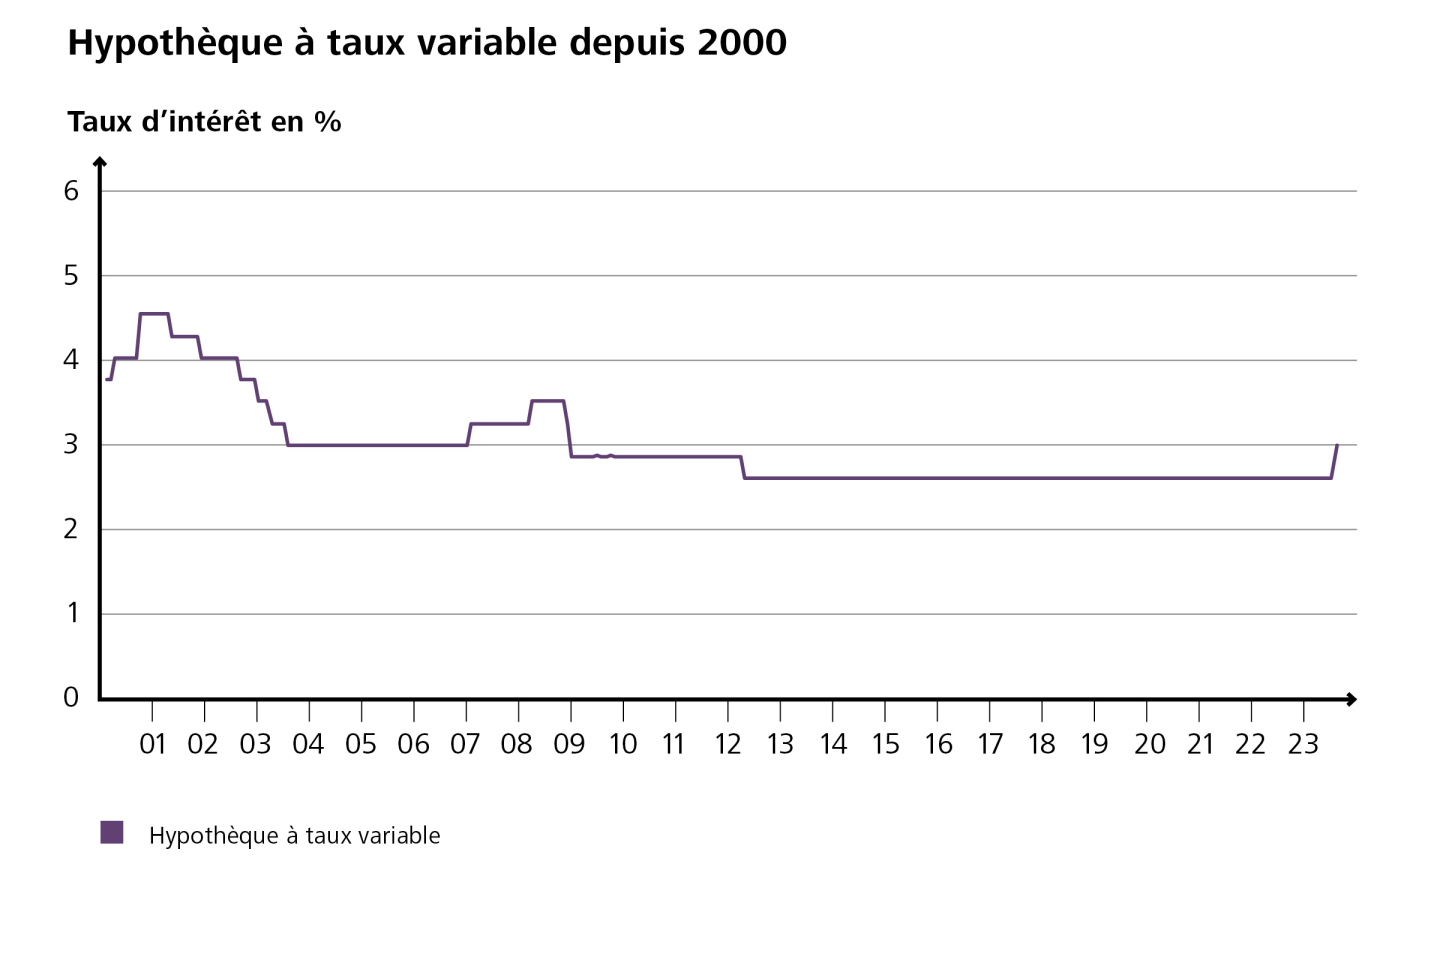 Le diagramme montre l'évolution des taux d'intérêt de l’hypothèque à taux variable depuis 2000. (source: Raiffeisen Suisse)